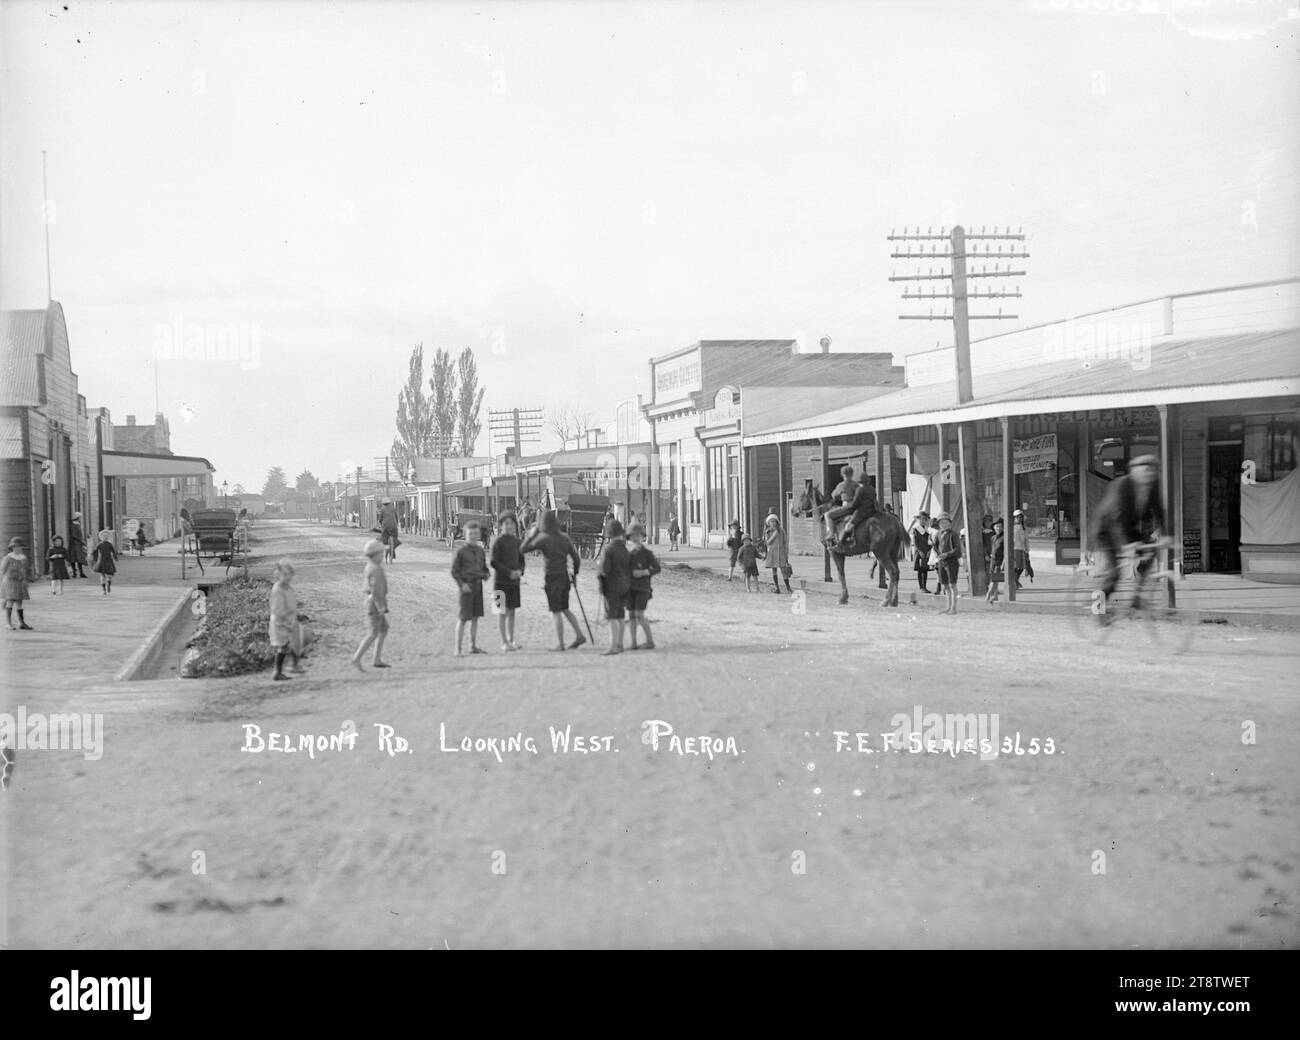 Belmont Road, Paeroa - Photograph taken by Fred E Flatt, Photograph looking west along Belmont Road, Paeroa. Taken in 1918 Stock Photo